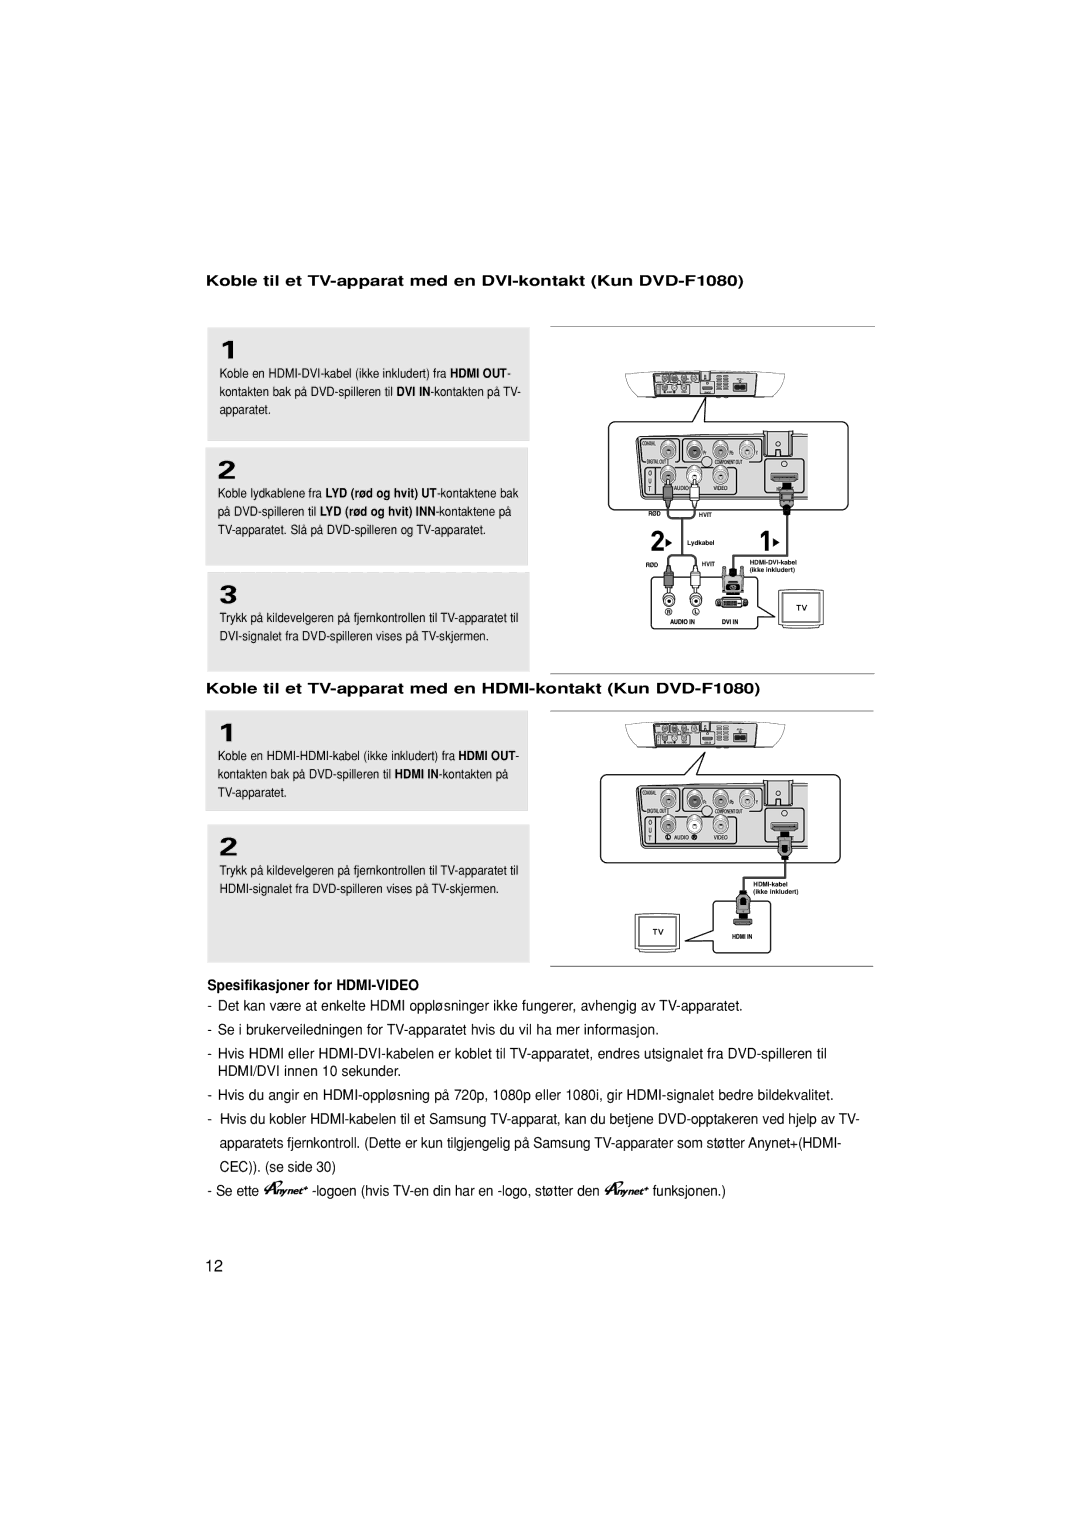 Samsung DVD-F1080W/XEE manual Koble til et TV-apparat med en DVI-kontakt Kun DVD-F1080, Spesifikasjoner for HDMI-VIDEO 